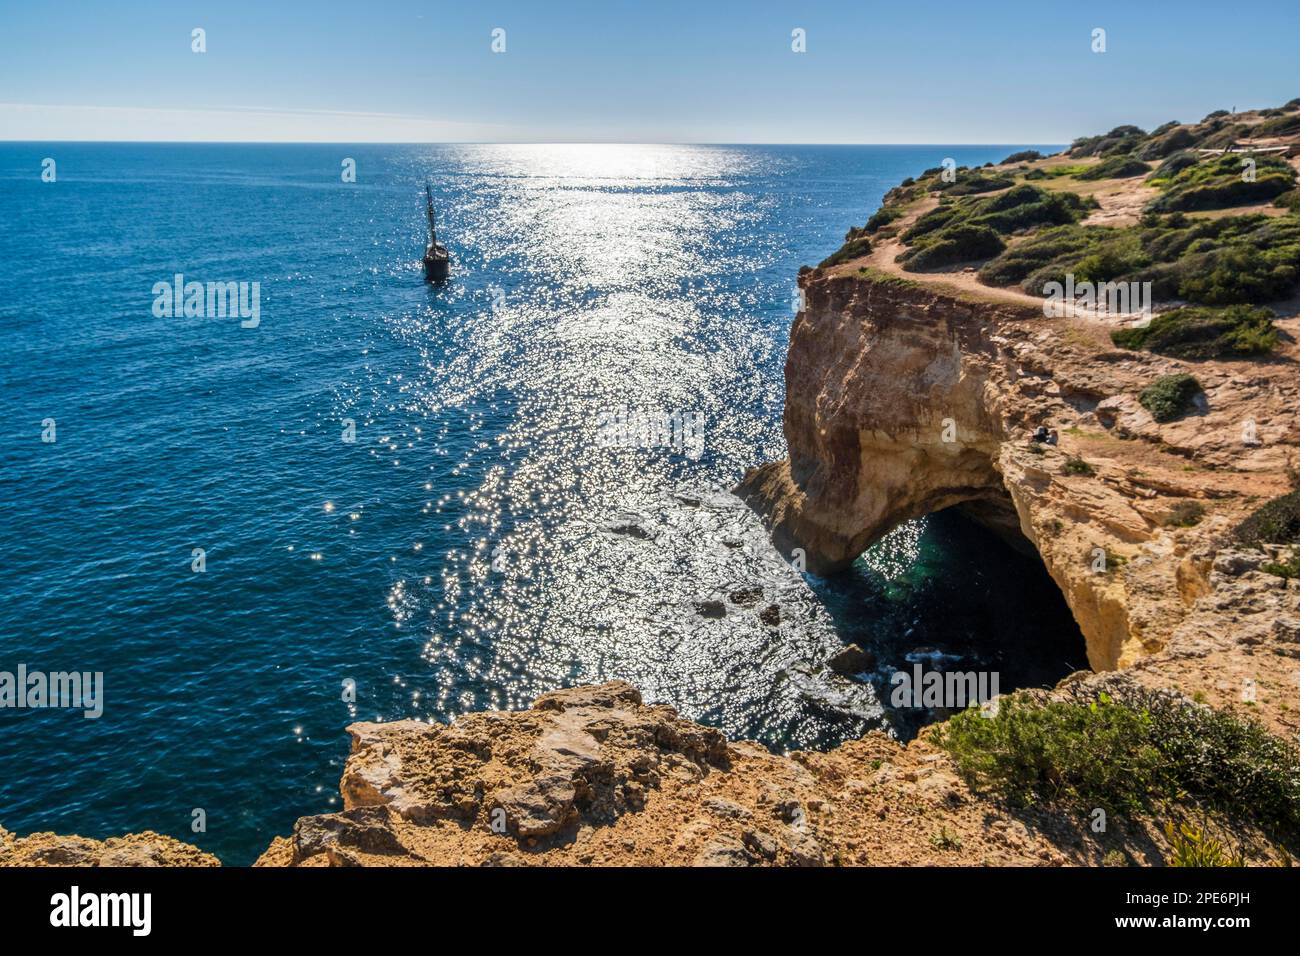 Voilier sur l'océan Atlantique, falaises et arche sur la côte de l'Algarve, au sud du Portugal Banque D'Images